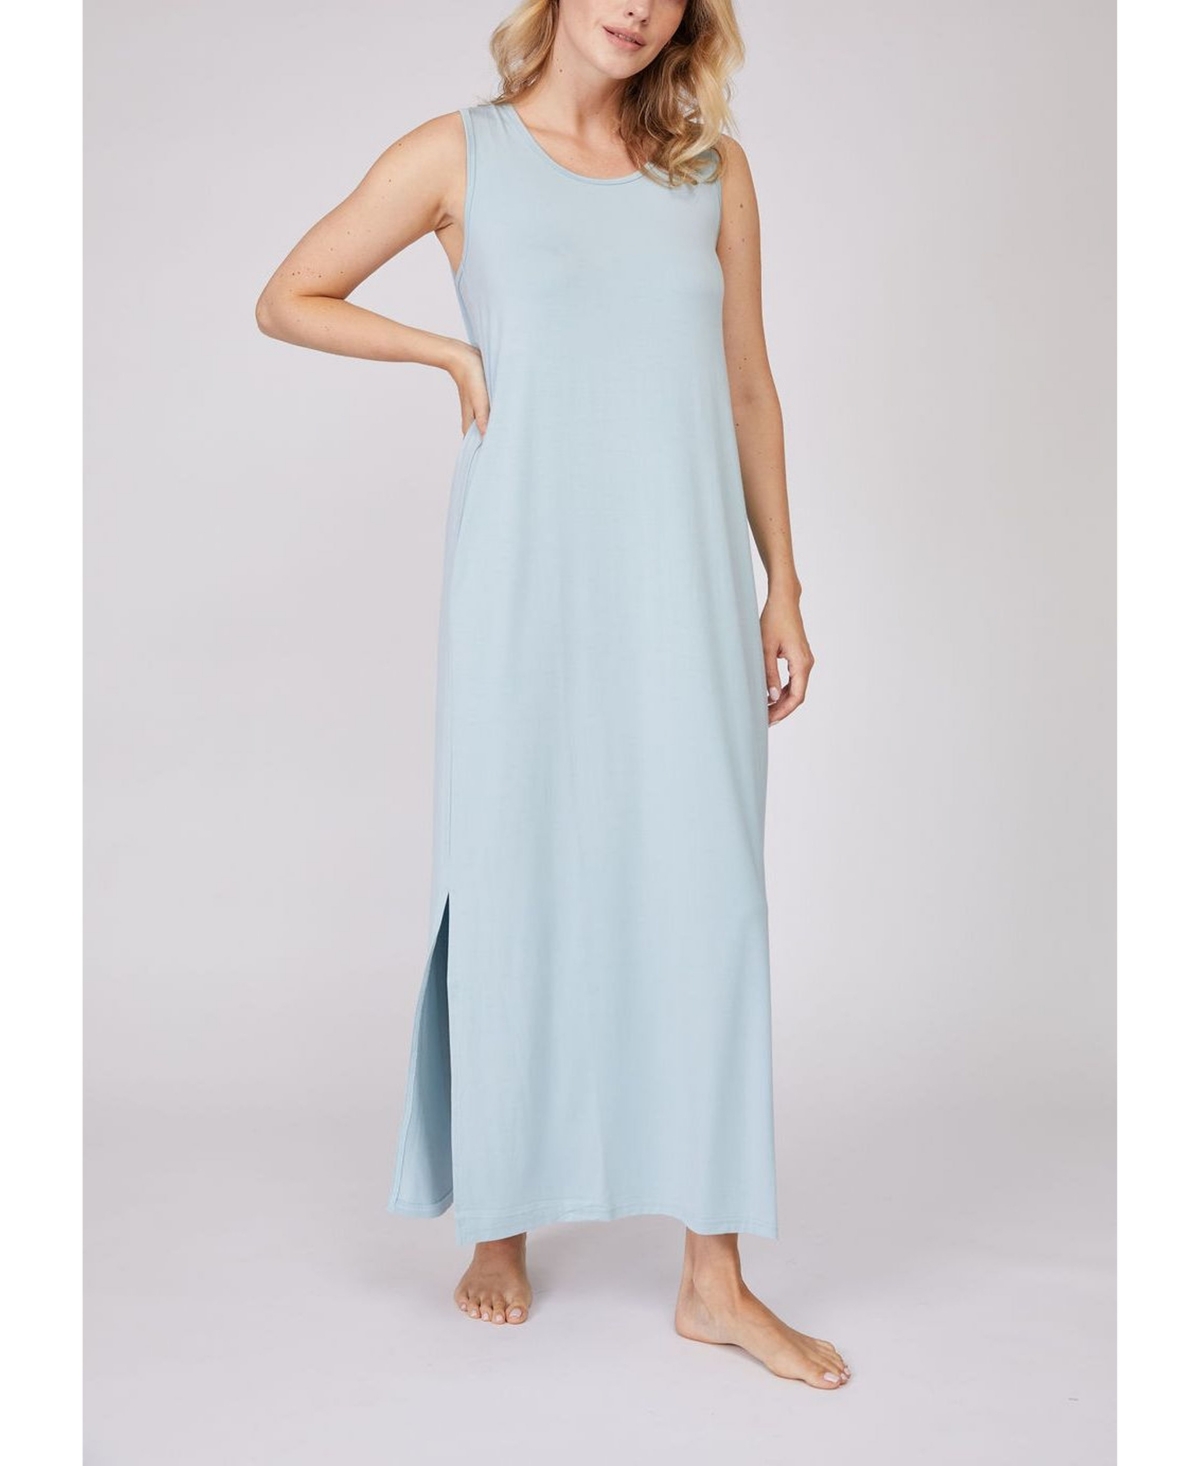 Pleated Back Drape Dress - Medium Blue